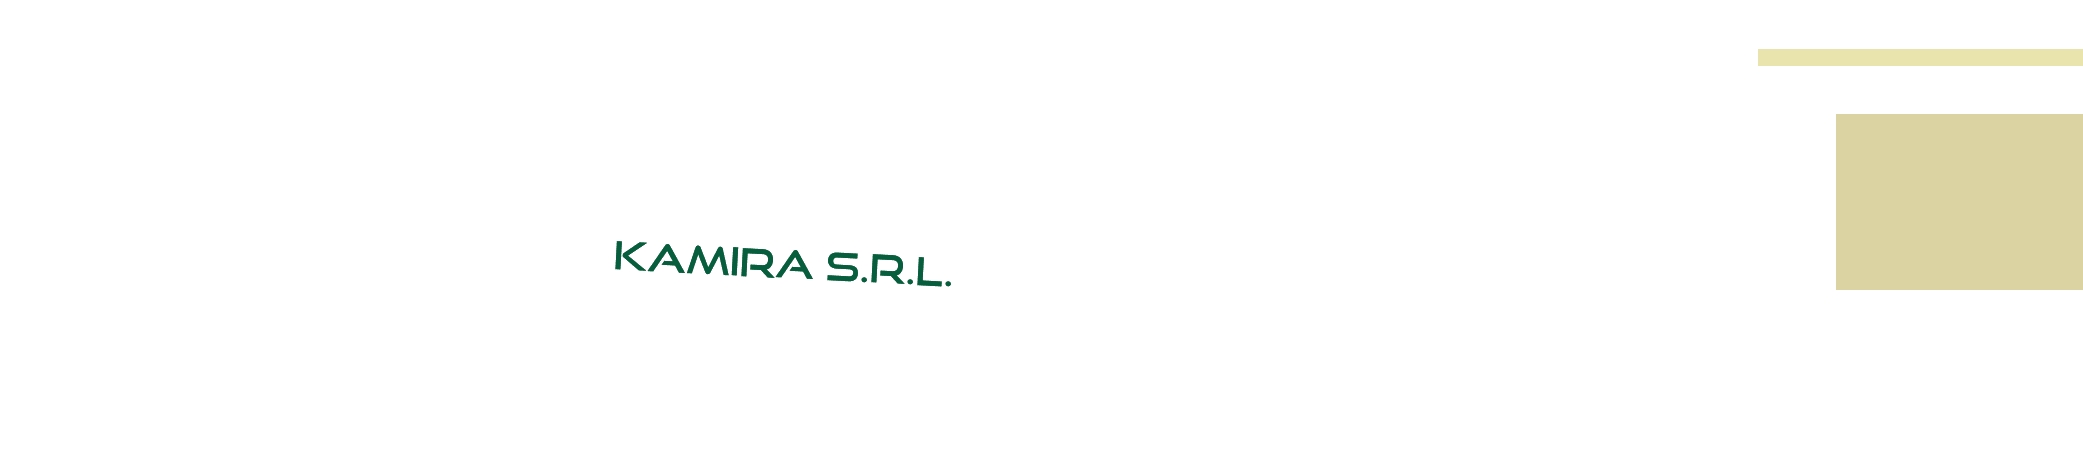 logo Kamira S.r.l.